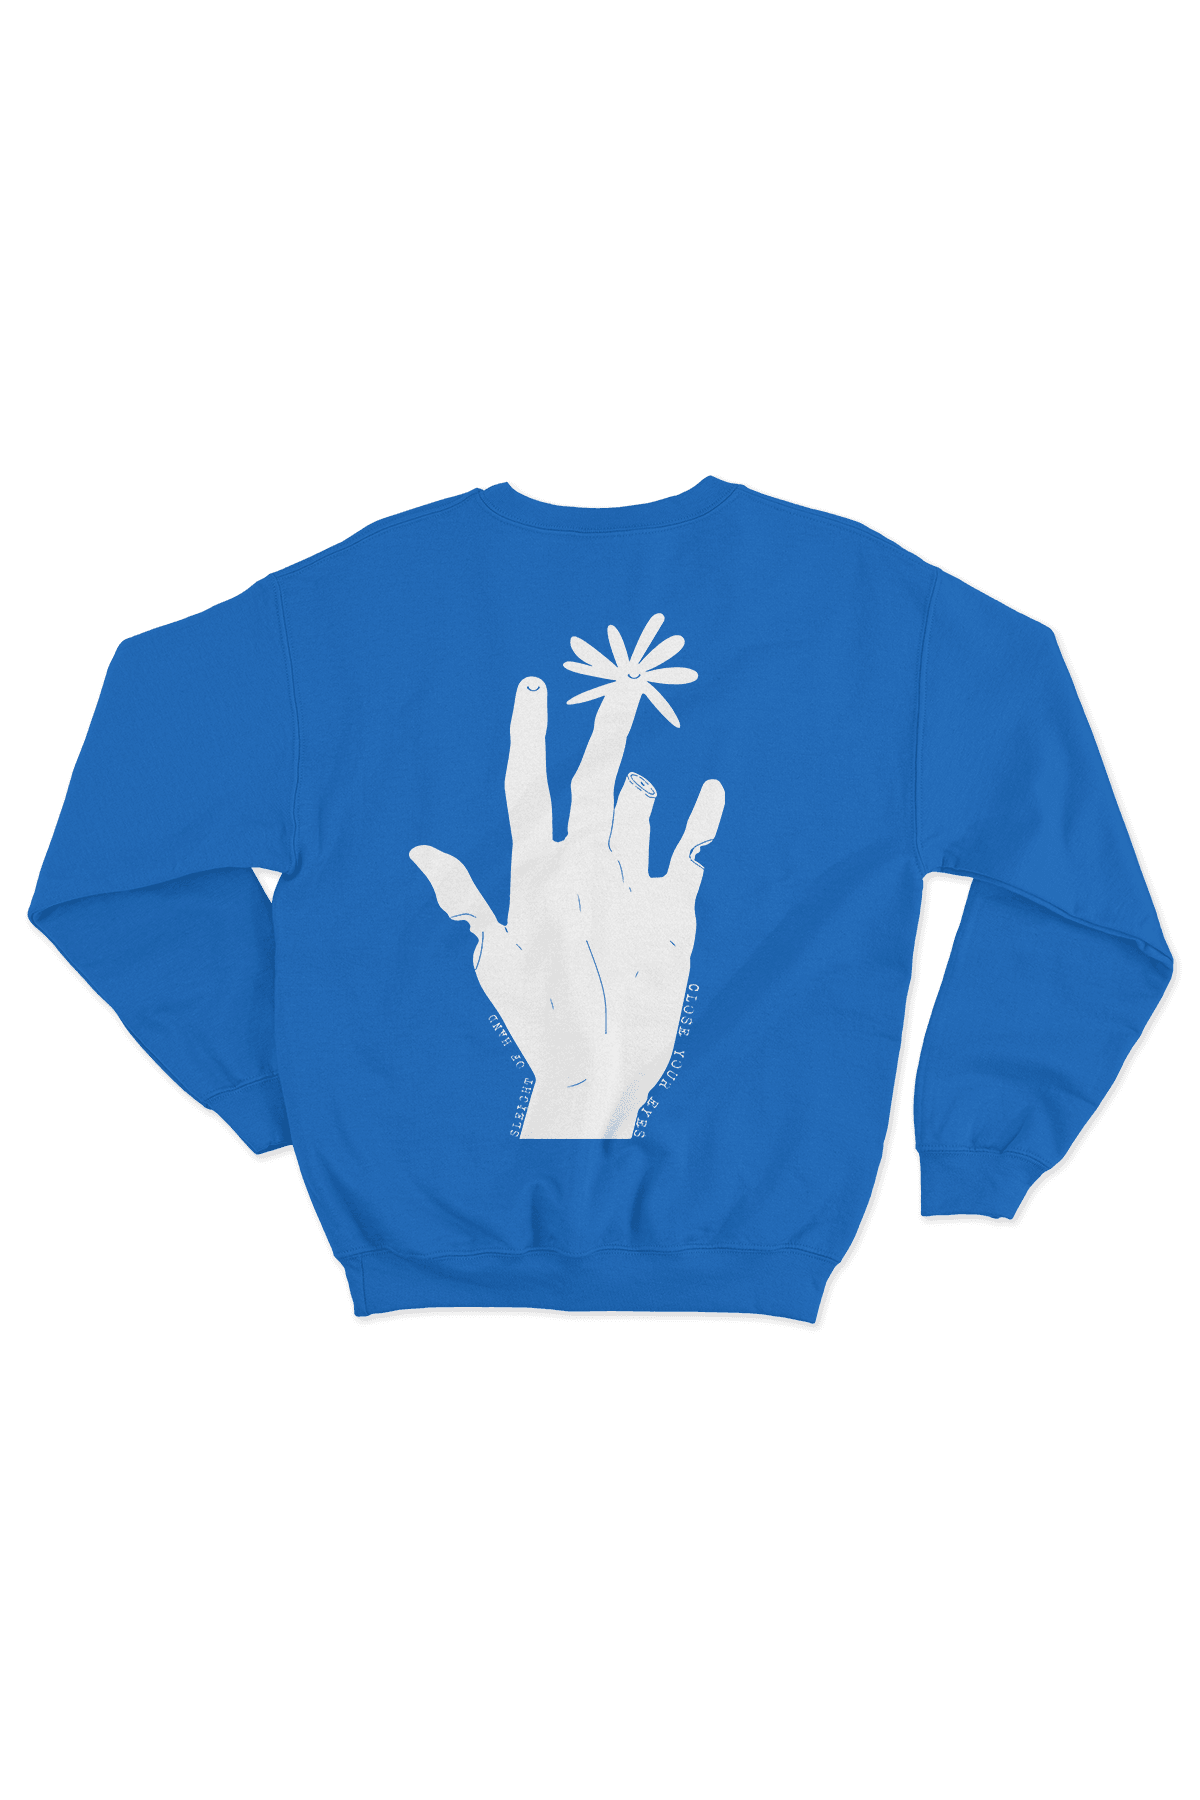 Sleight Of Hand Oversize Men's Sweatshirt